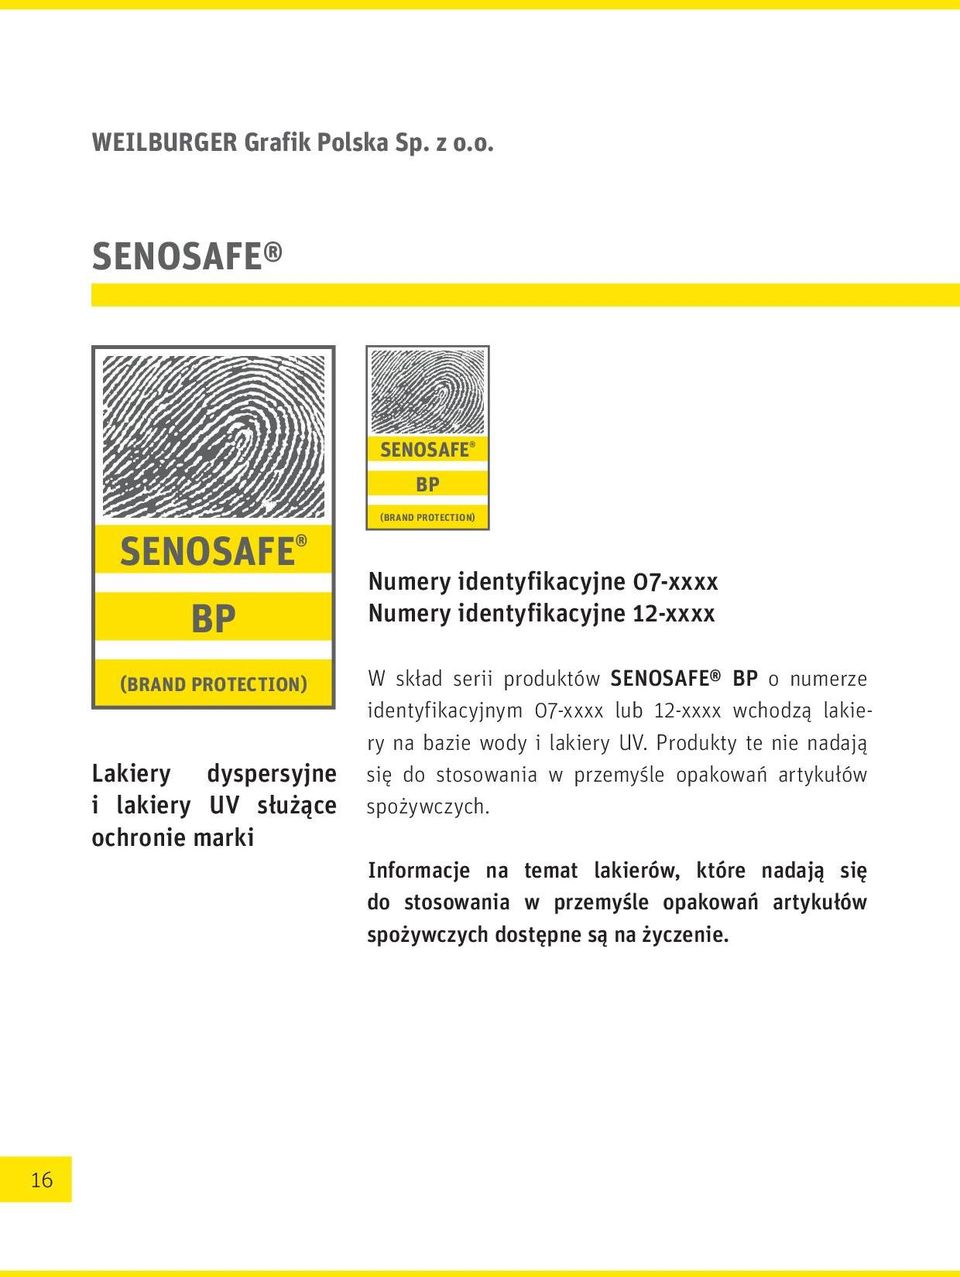 o. SENOSAFE SENOSAFE BP (BRAND PROTECTION) SENOSAFE BP (BRAND PROTECTION) Lakiery dyspersyjne i lakiery UV służące ochronie marki 16 Numery